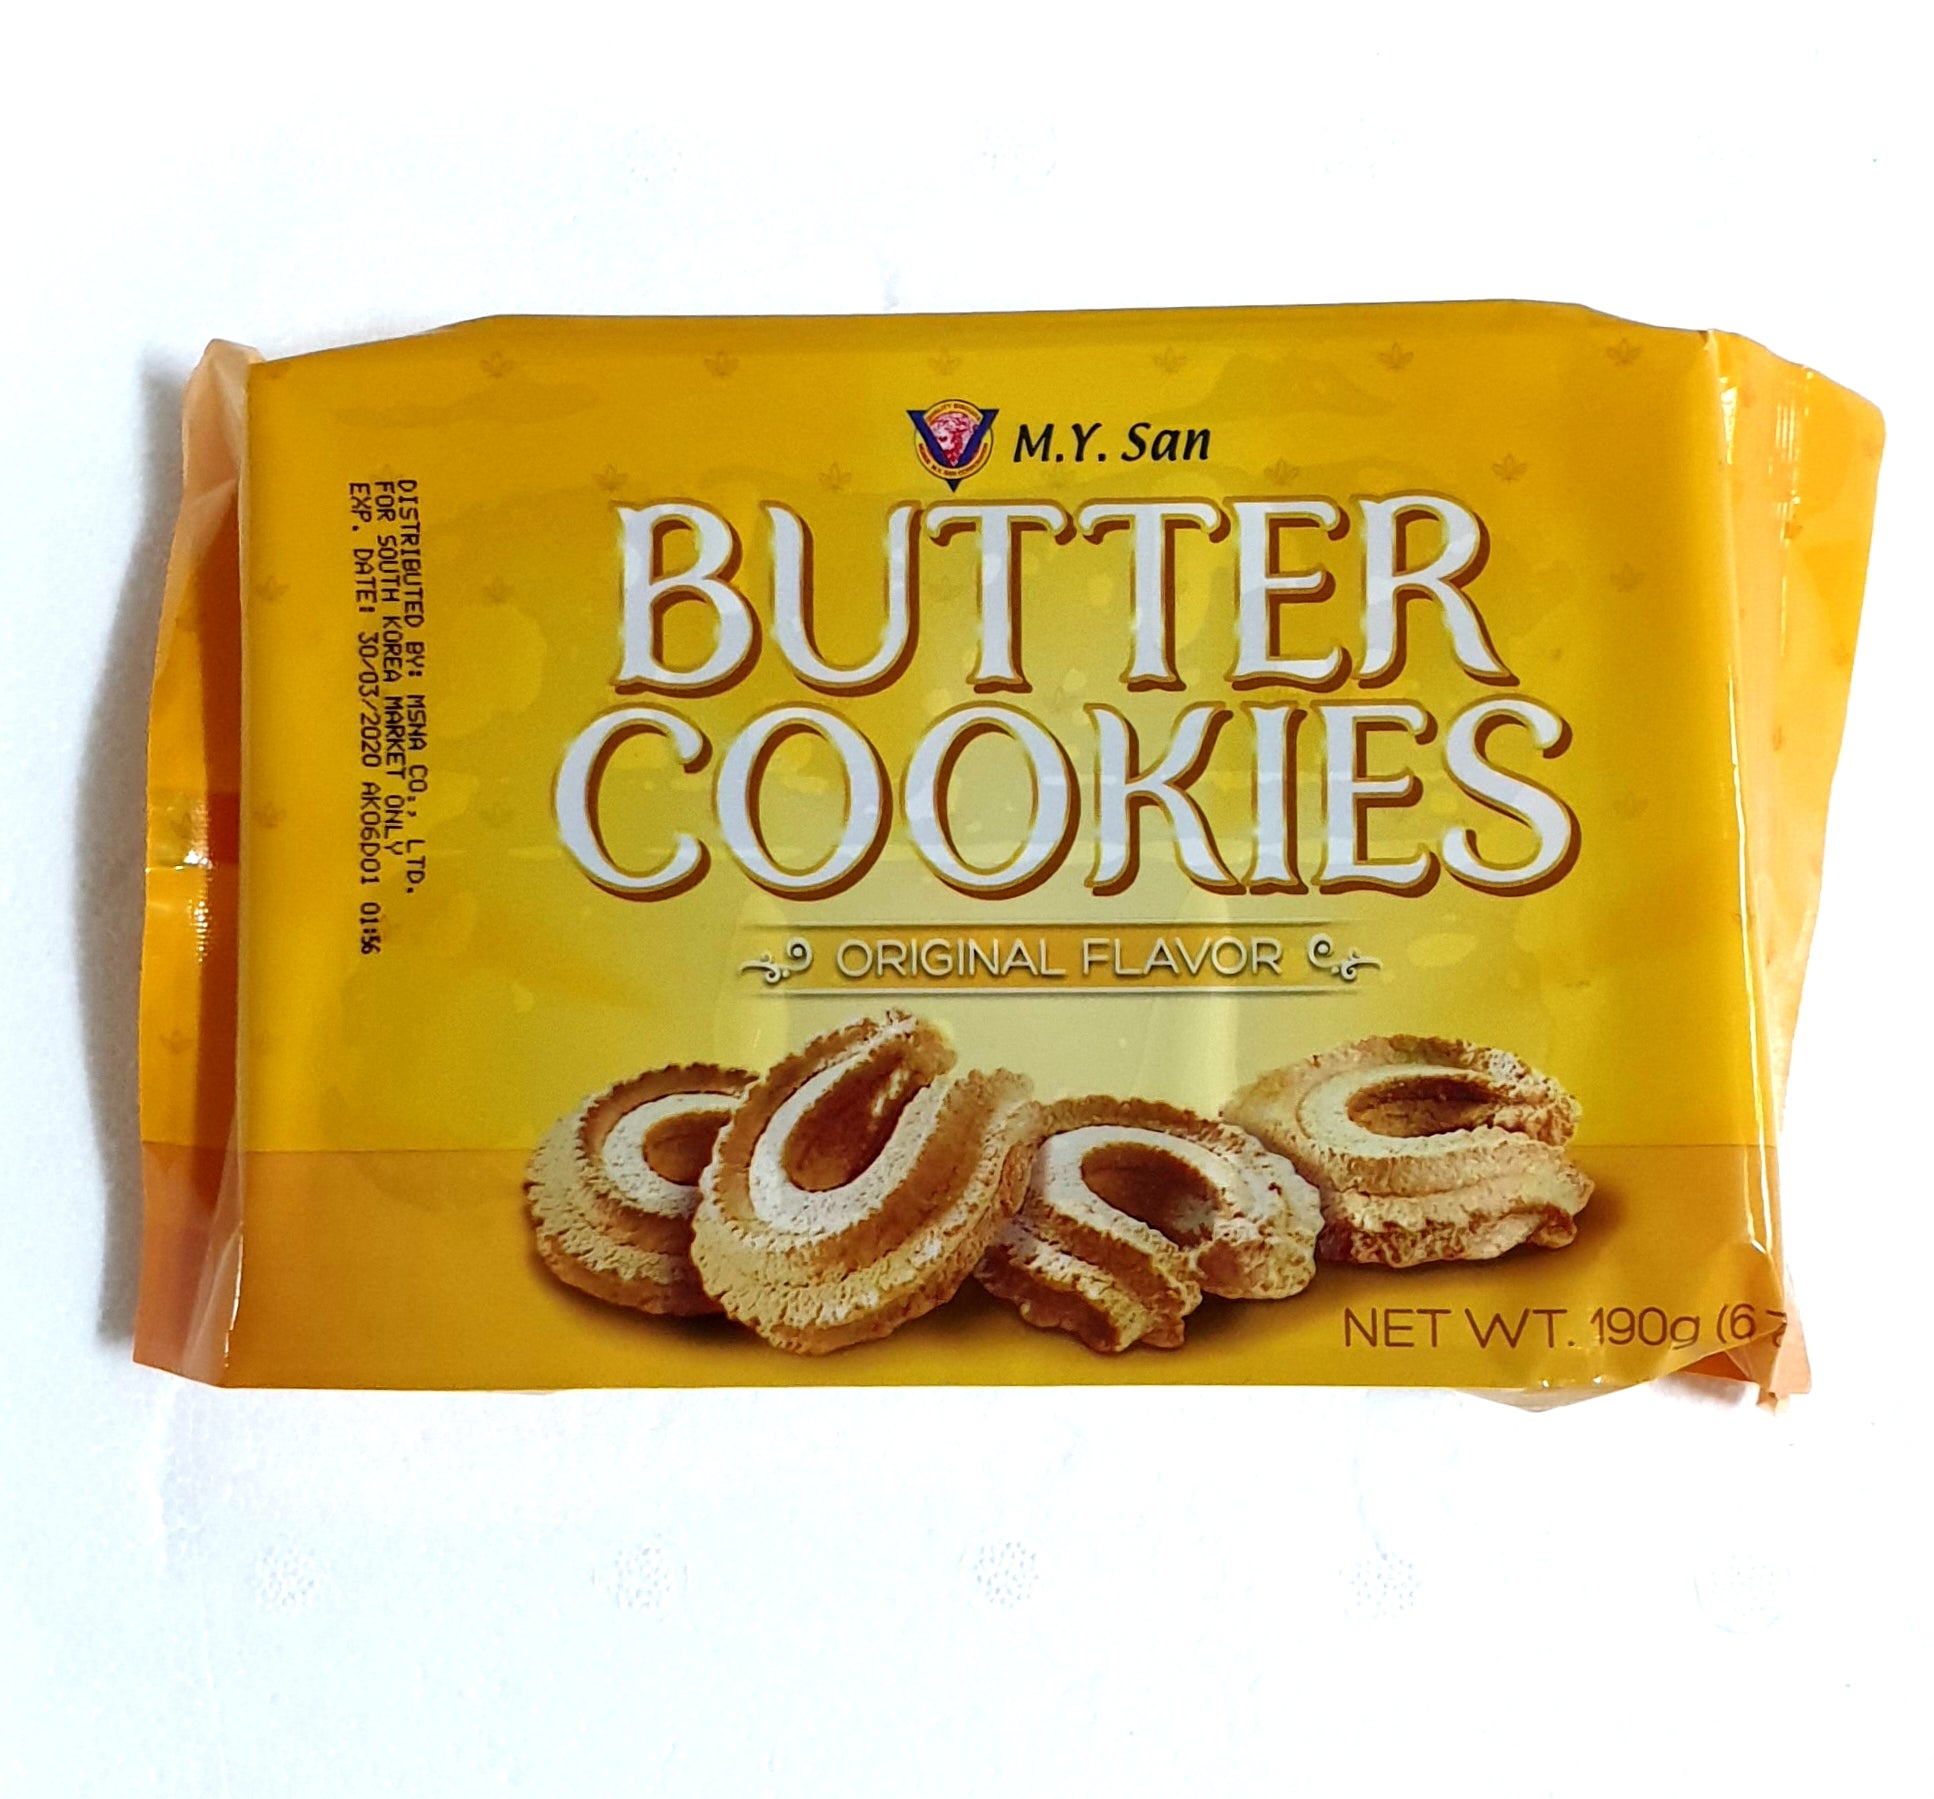 M.Y. San Butter Cookies